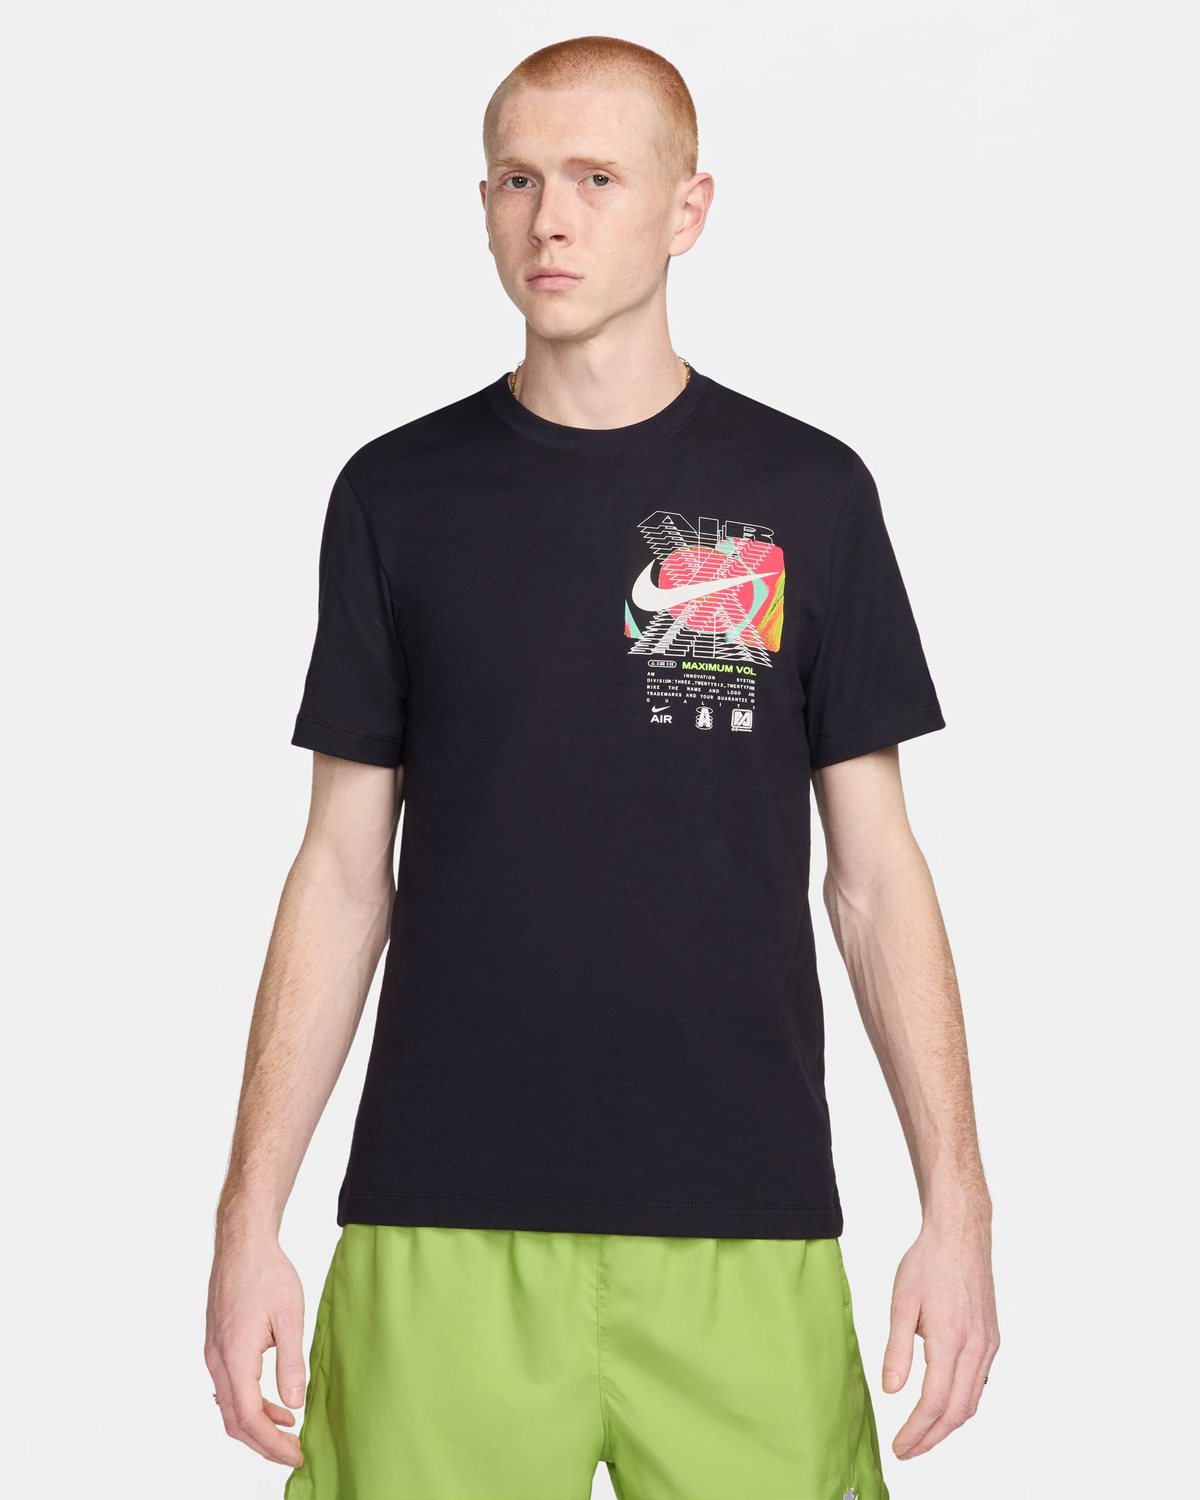 Nike-Sportswear-Max-Volume-T-Shirt-Black-Volt-Lava-1